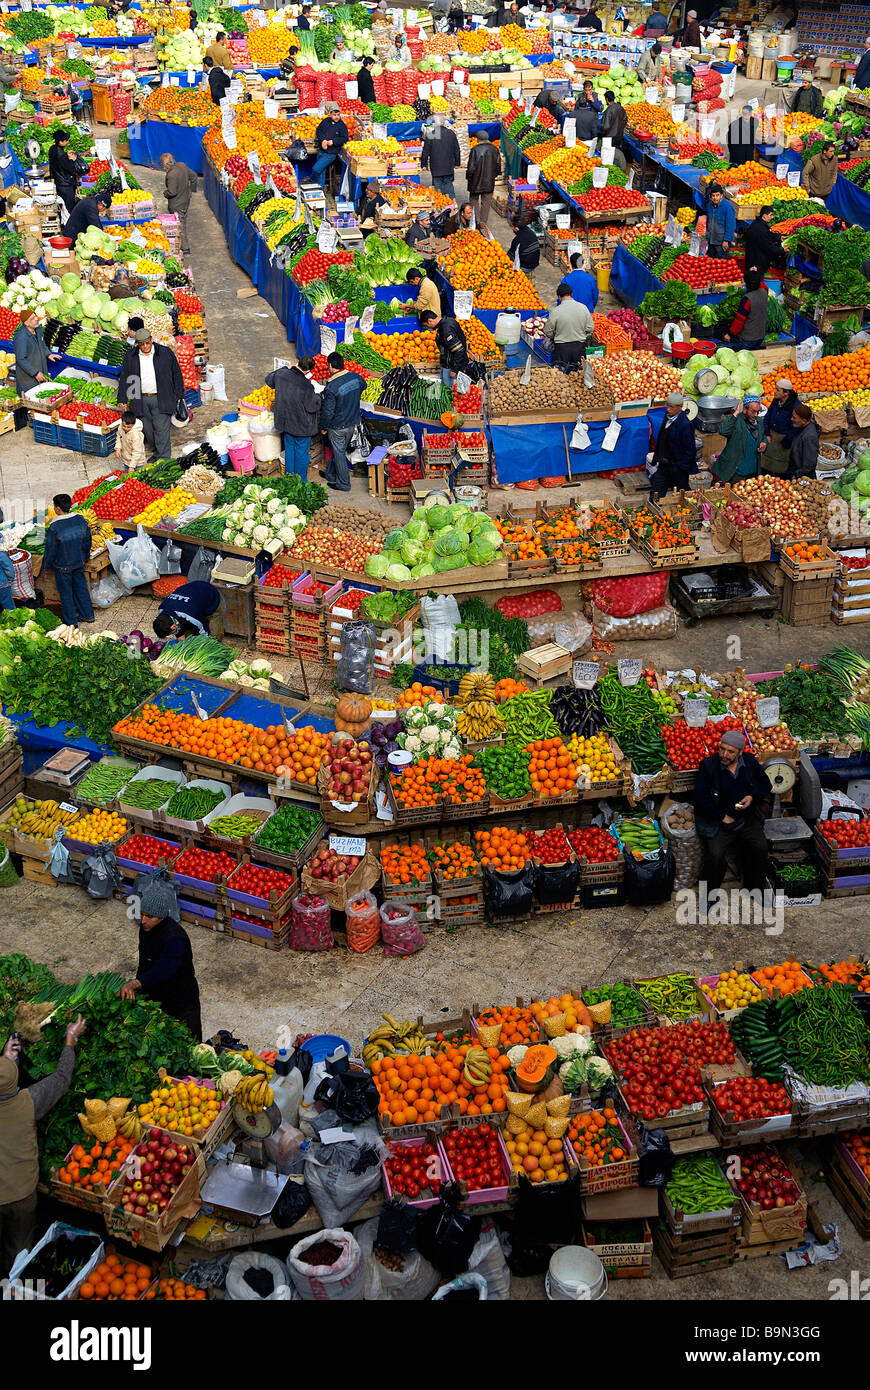 Turchia, Anatolia centrale, Konya, verdure e il mercato della frutta Foto Stock